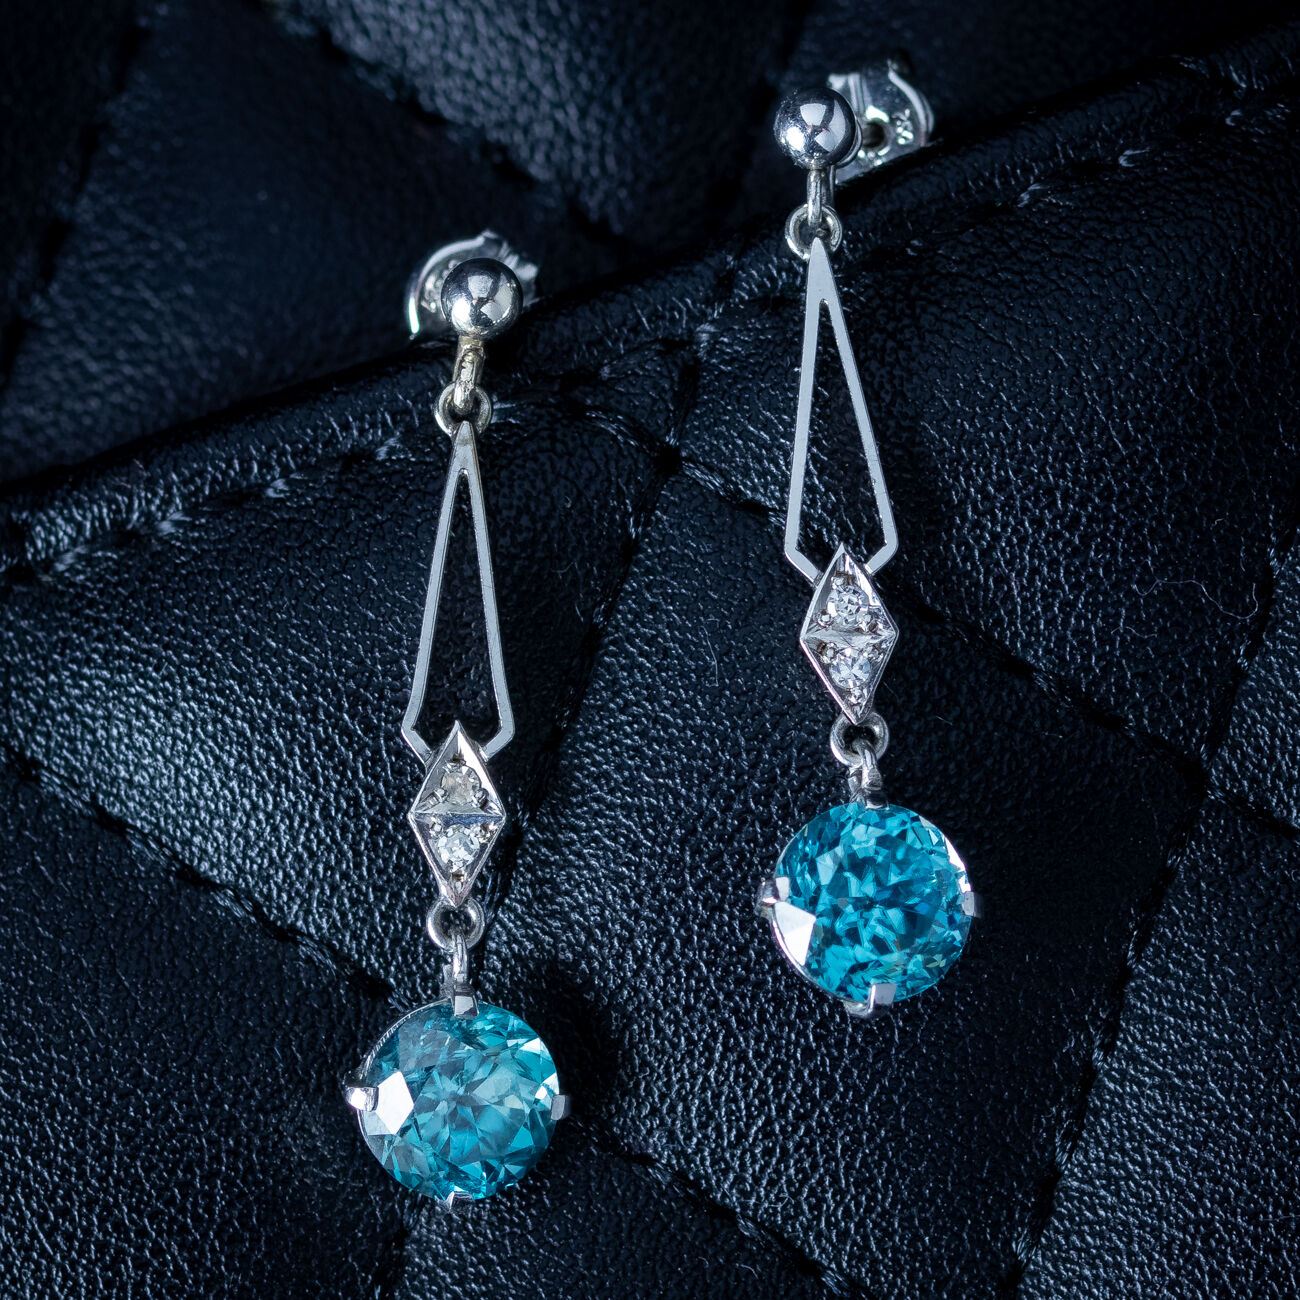 Art Deco Blue Zircon Diamond Drop Earrings 18ct Gold 1ct Zircons